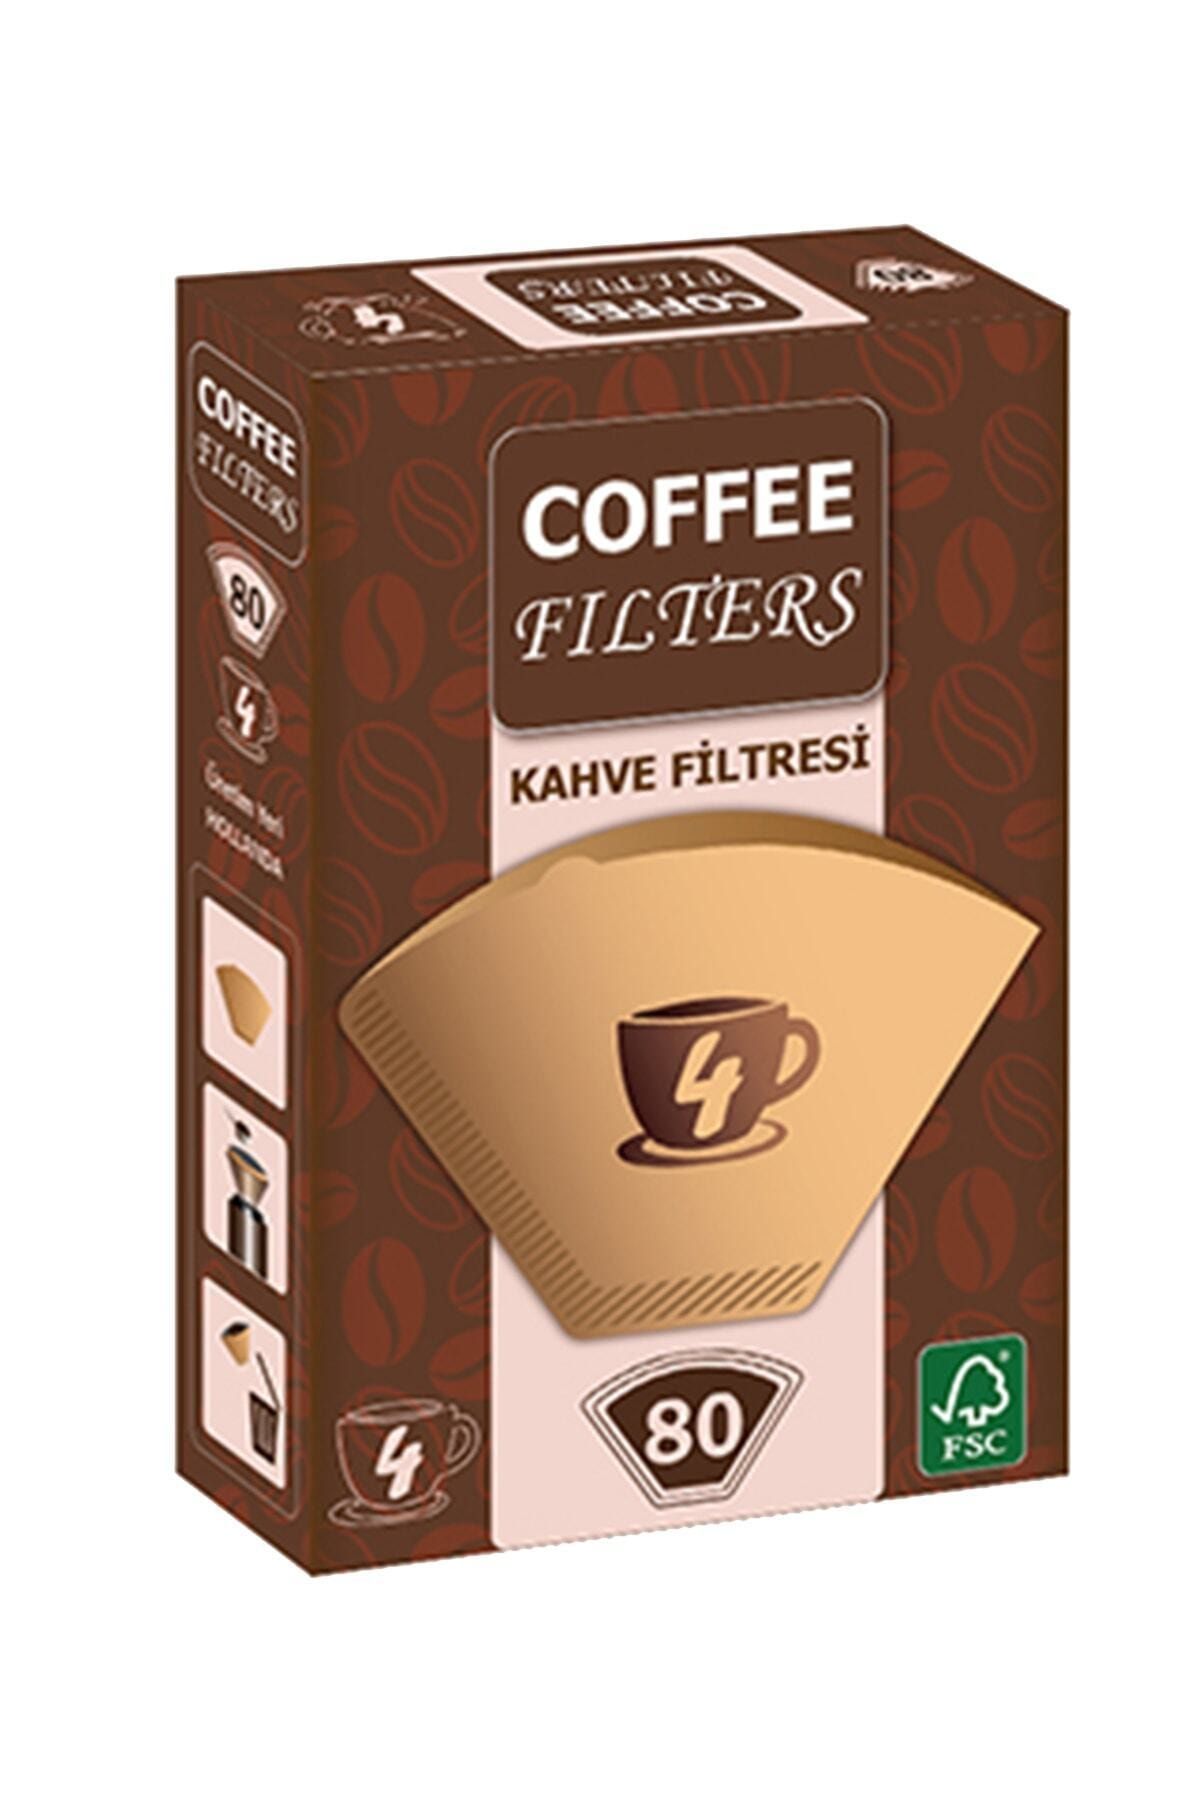 Universal Coffee Filters Filtre Kahve Kağıdı 80'li Paket X 3 Paket